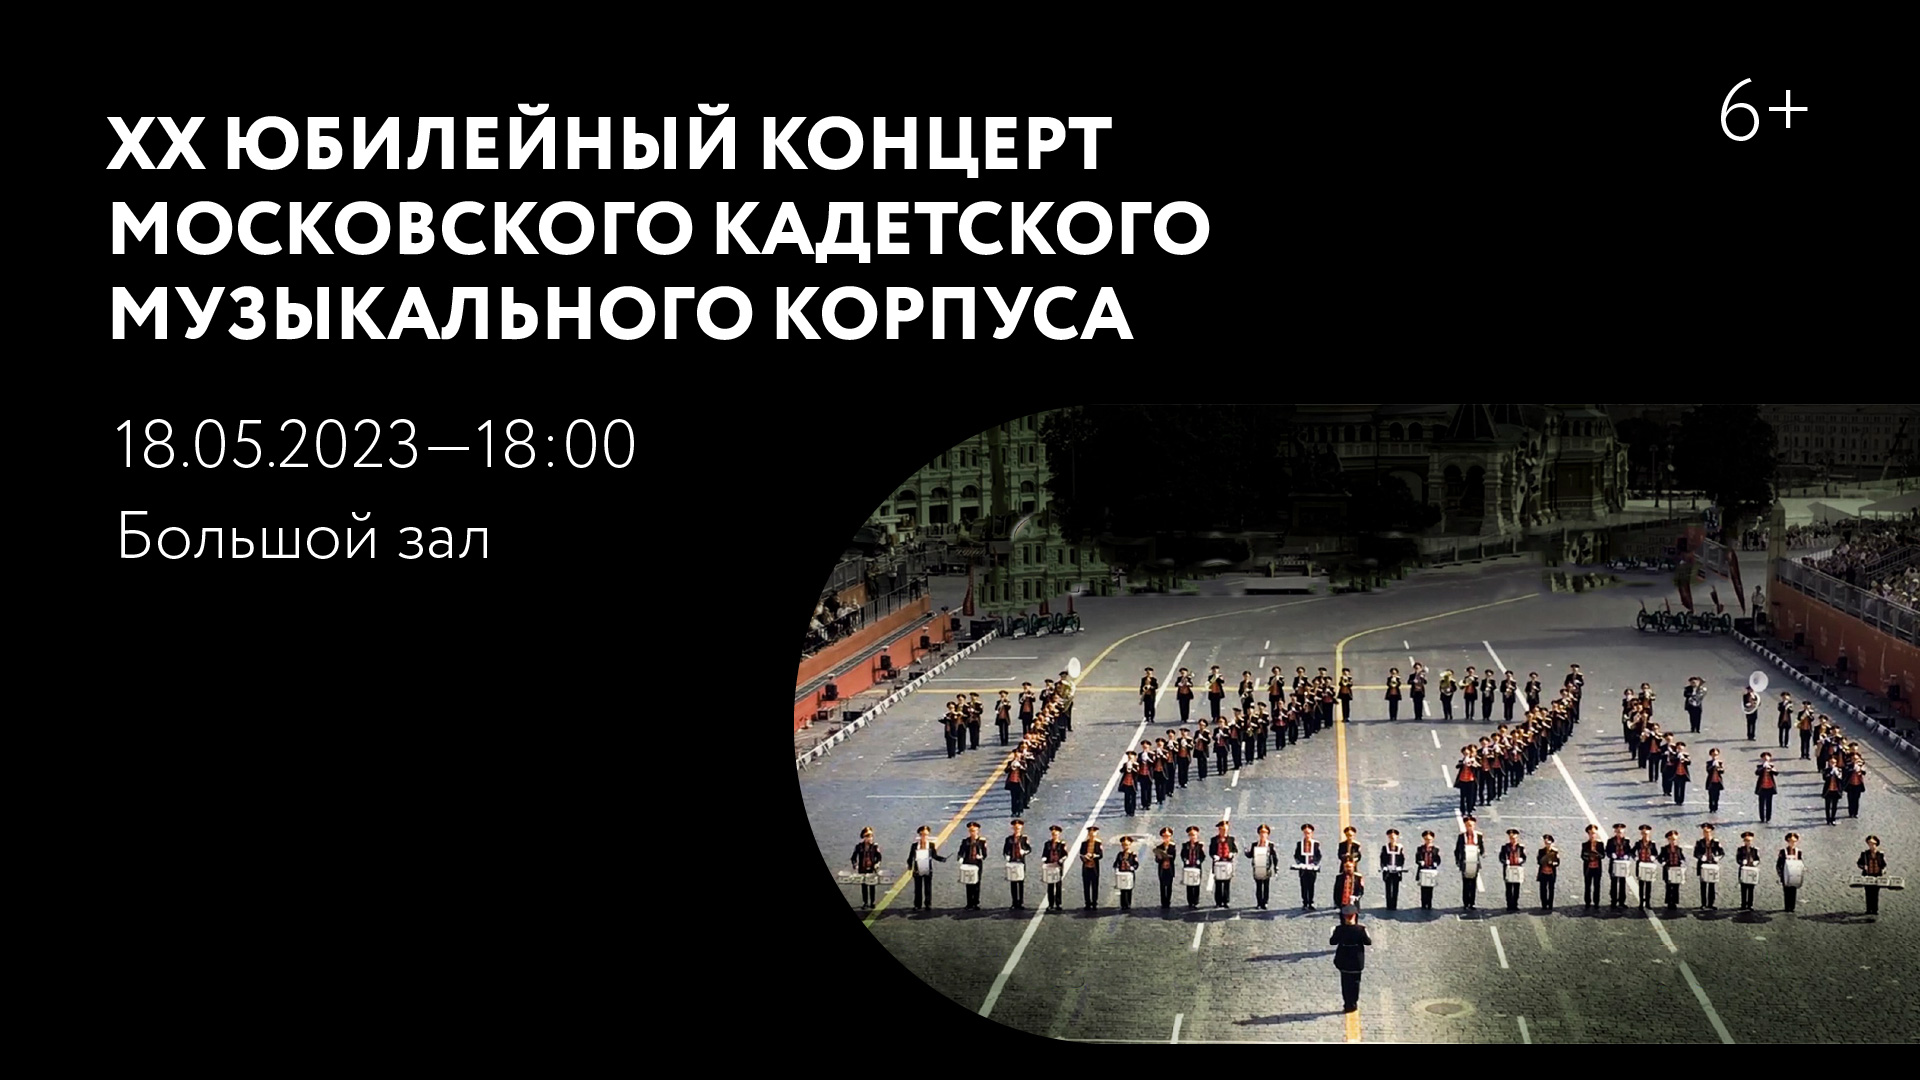 XX юбилейный концерт Московского кадетского музыкального корпуса